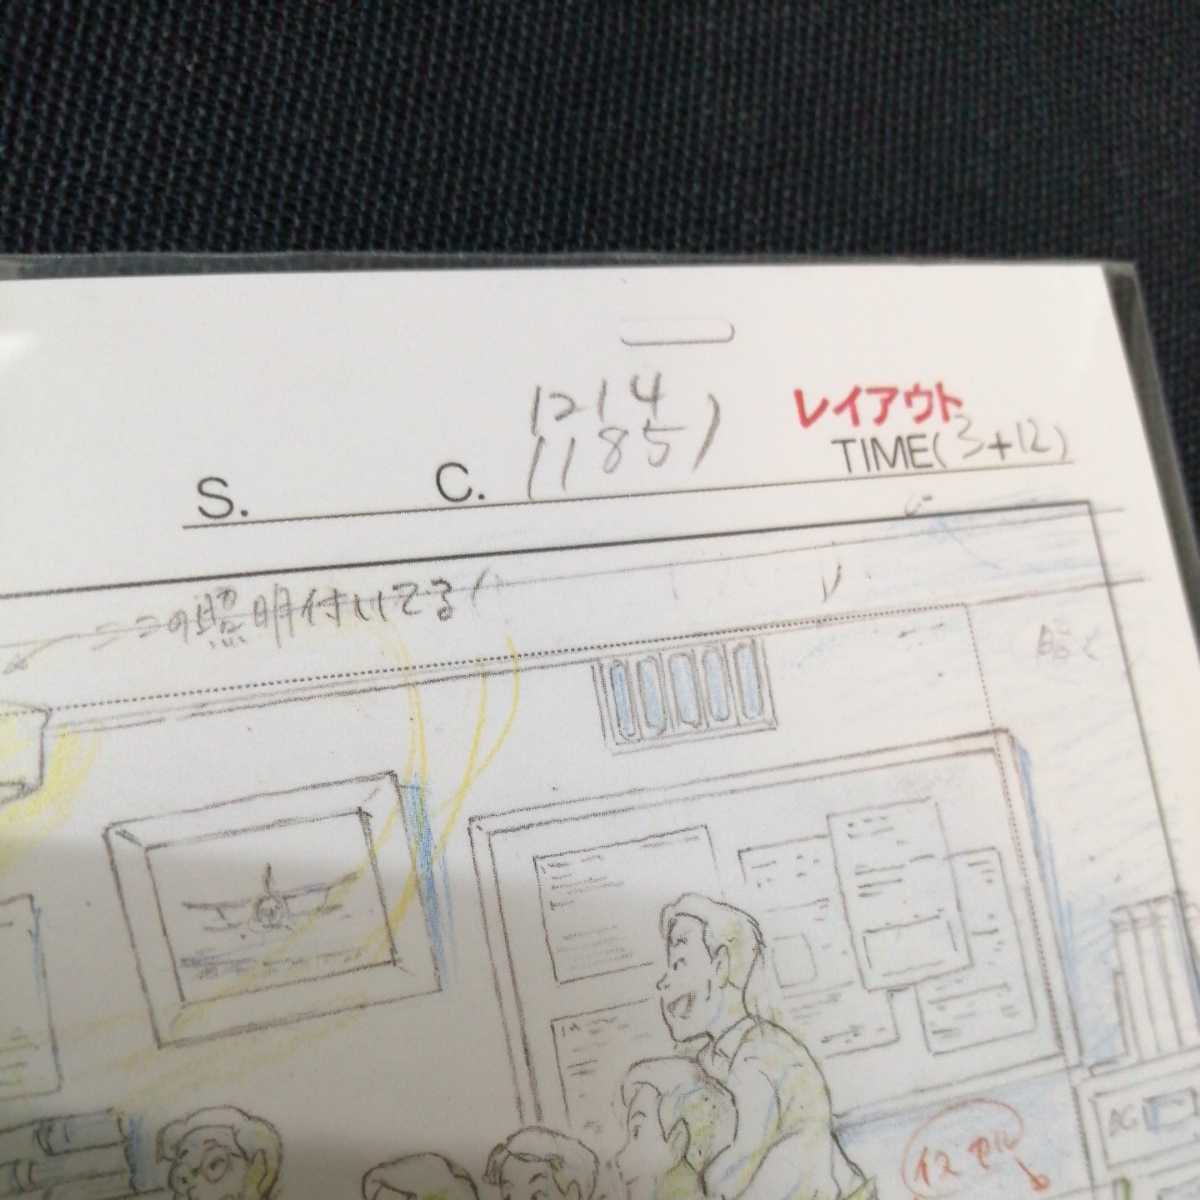  Studio Ghibli способ ... расположение порез . осмотр ) Ghibli открытка постер исходная картина цифровая картинка расположение выставка Miyazaki . высота поле .b